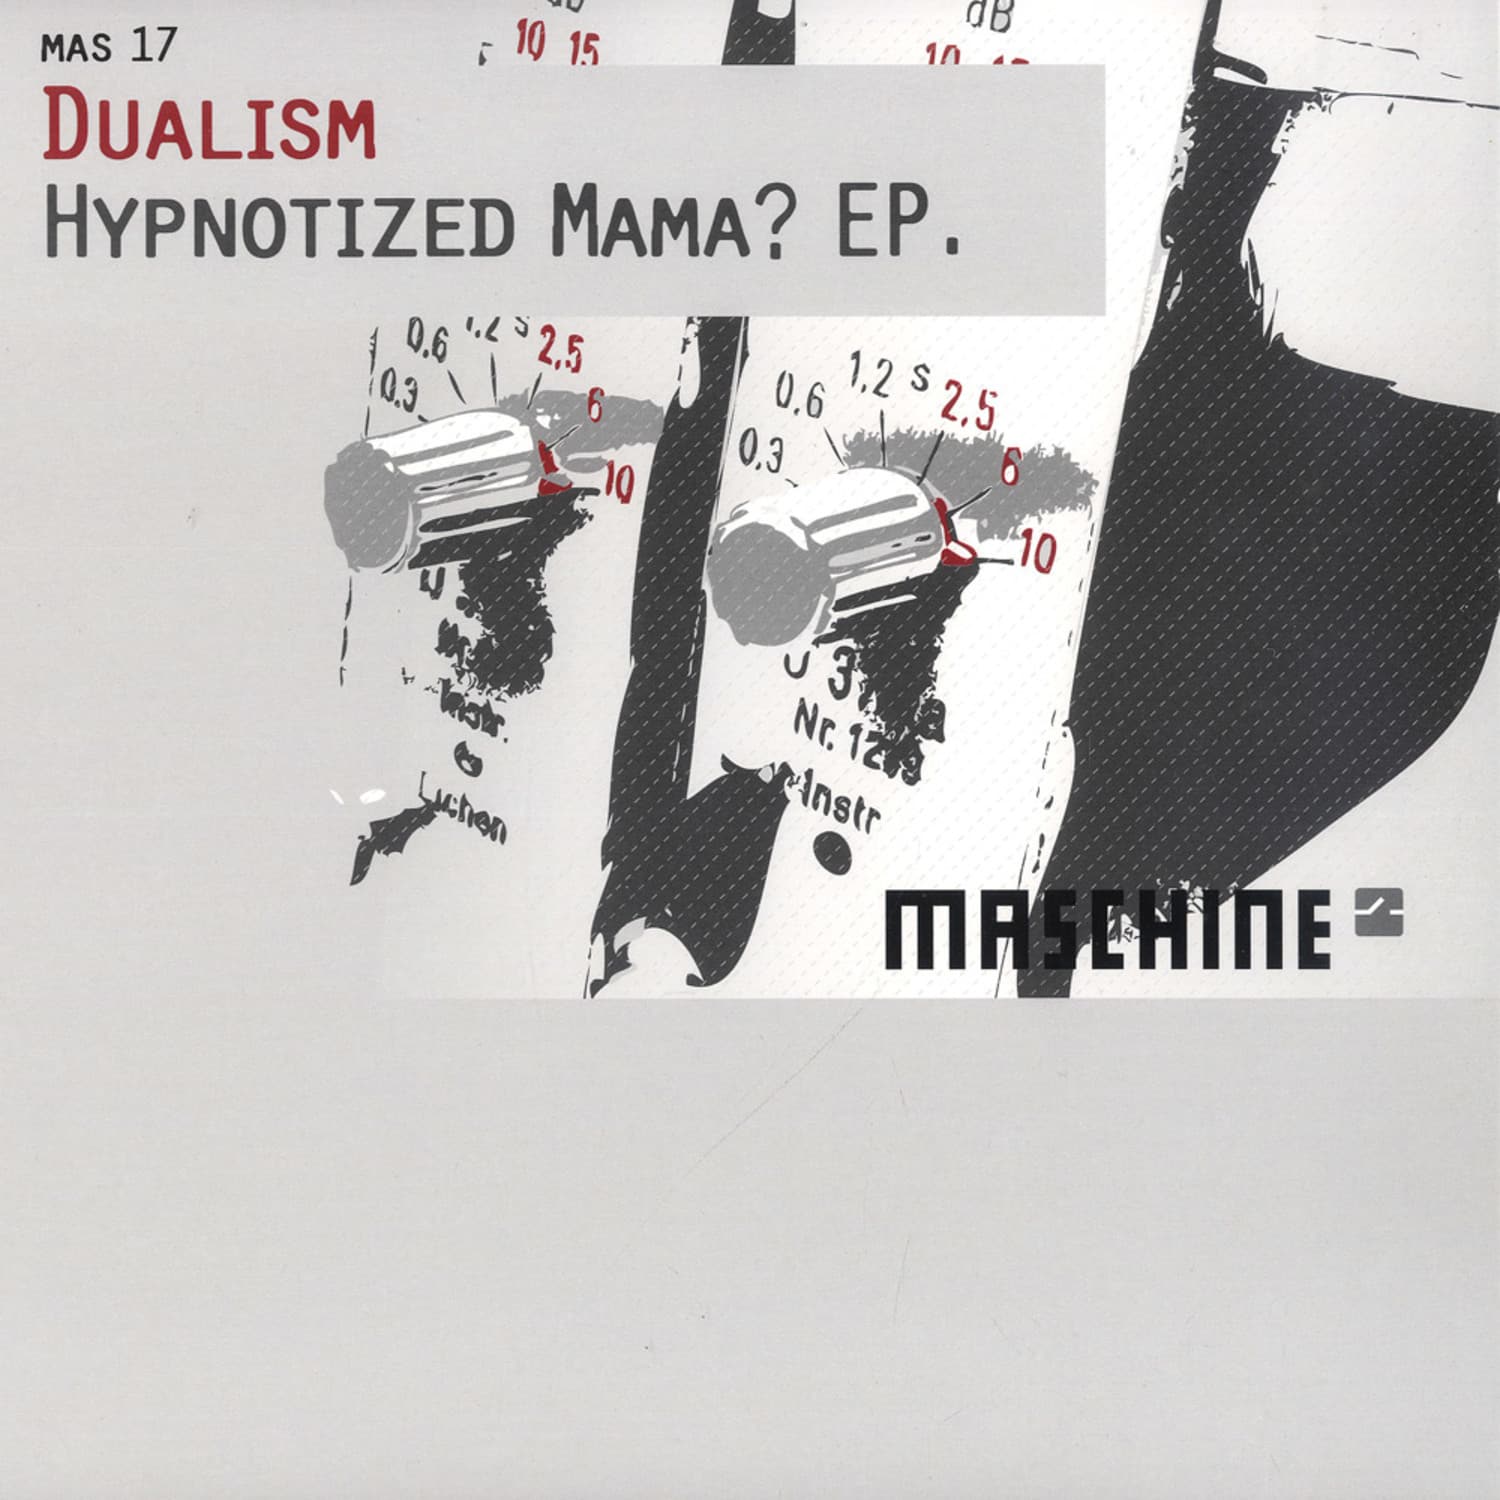 Dualism - HYPNOTIZED MAMA? EP